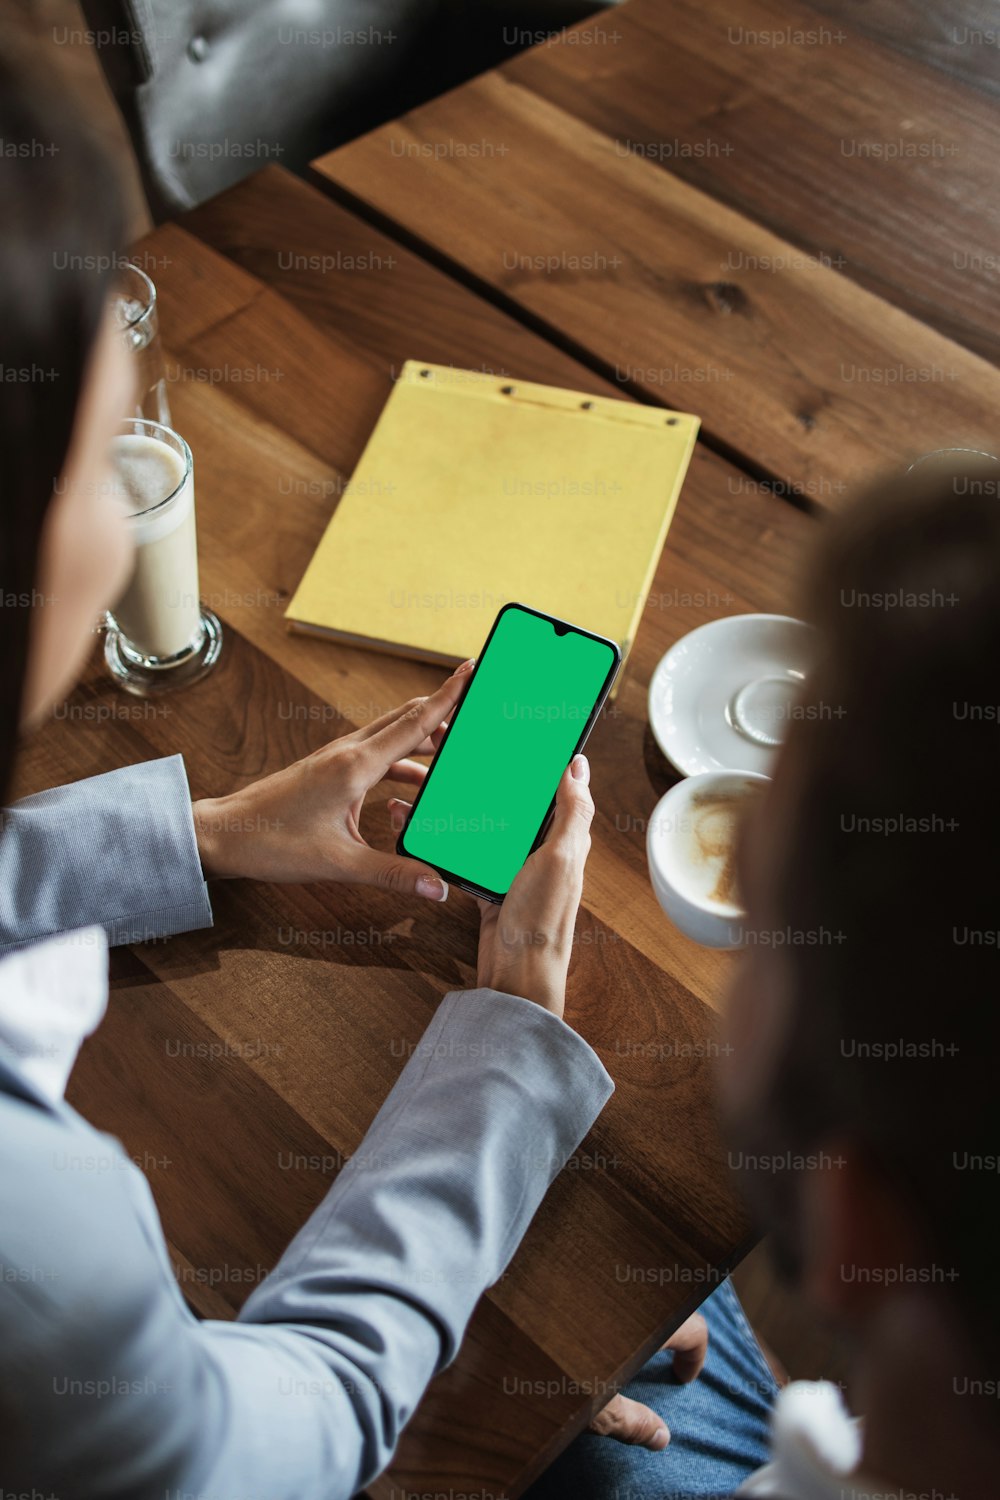 회의나 점심 식사 중 현대적인 카페 레스토랑에서 빈티지 나무 테이블에 빈 녹색 화면이 있는 스마트 휴대폰을 들고 있는 사업가들의 모형 이미지.